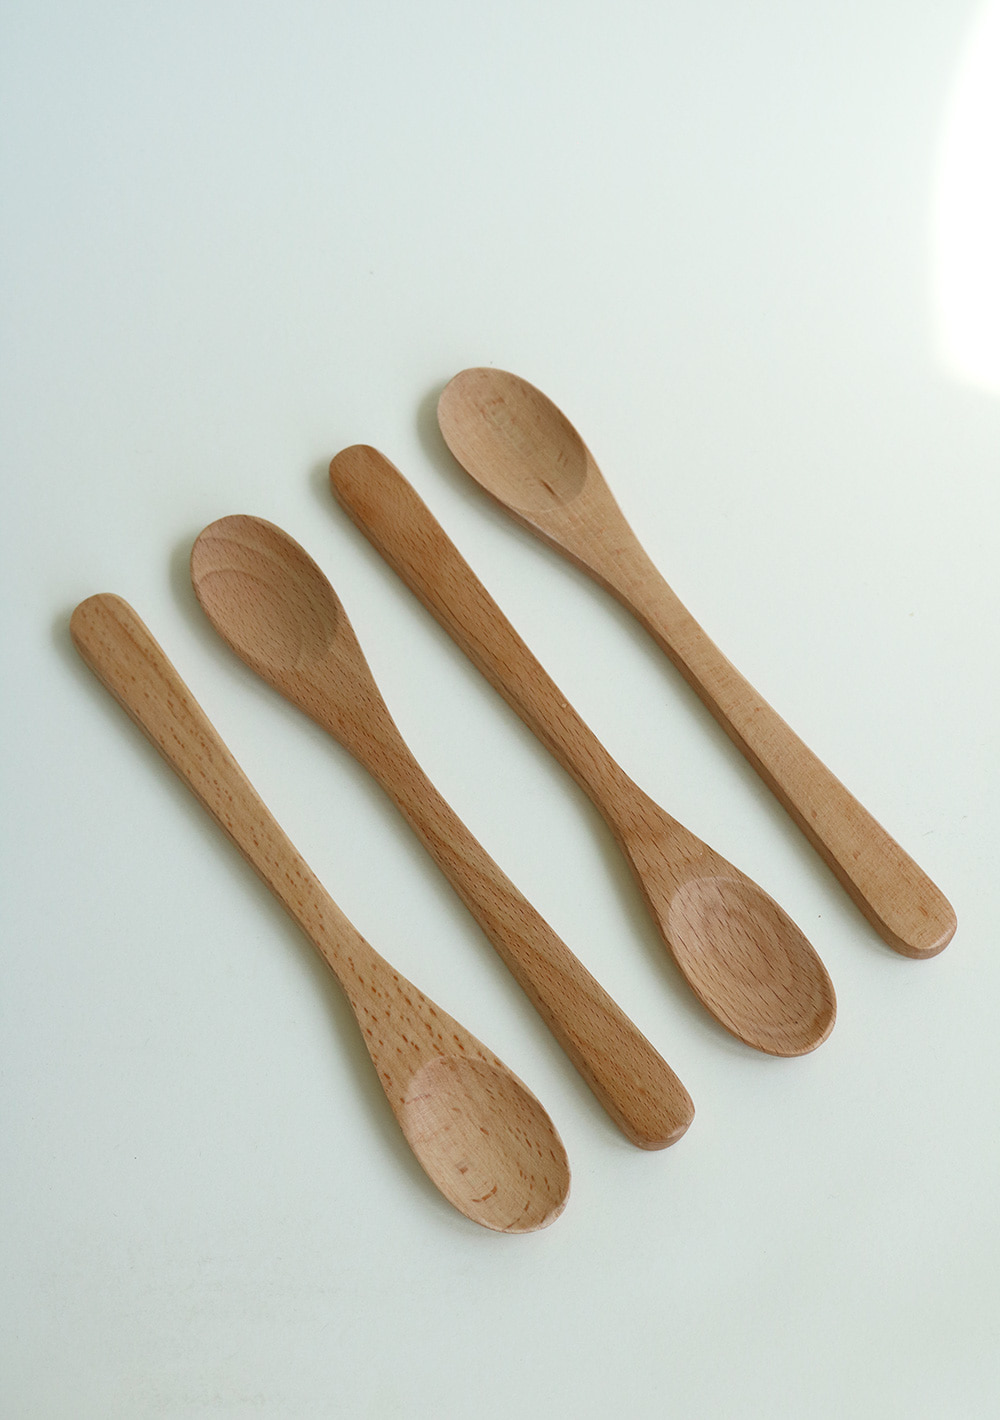 Beech wood Spoon